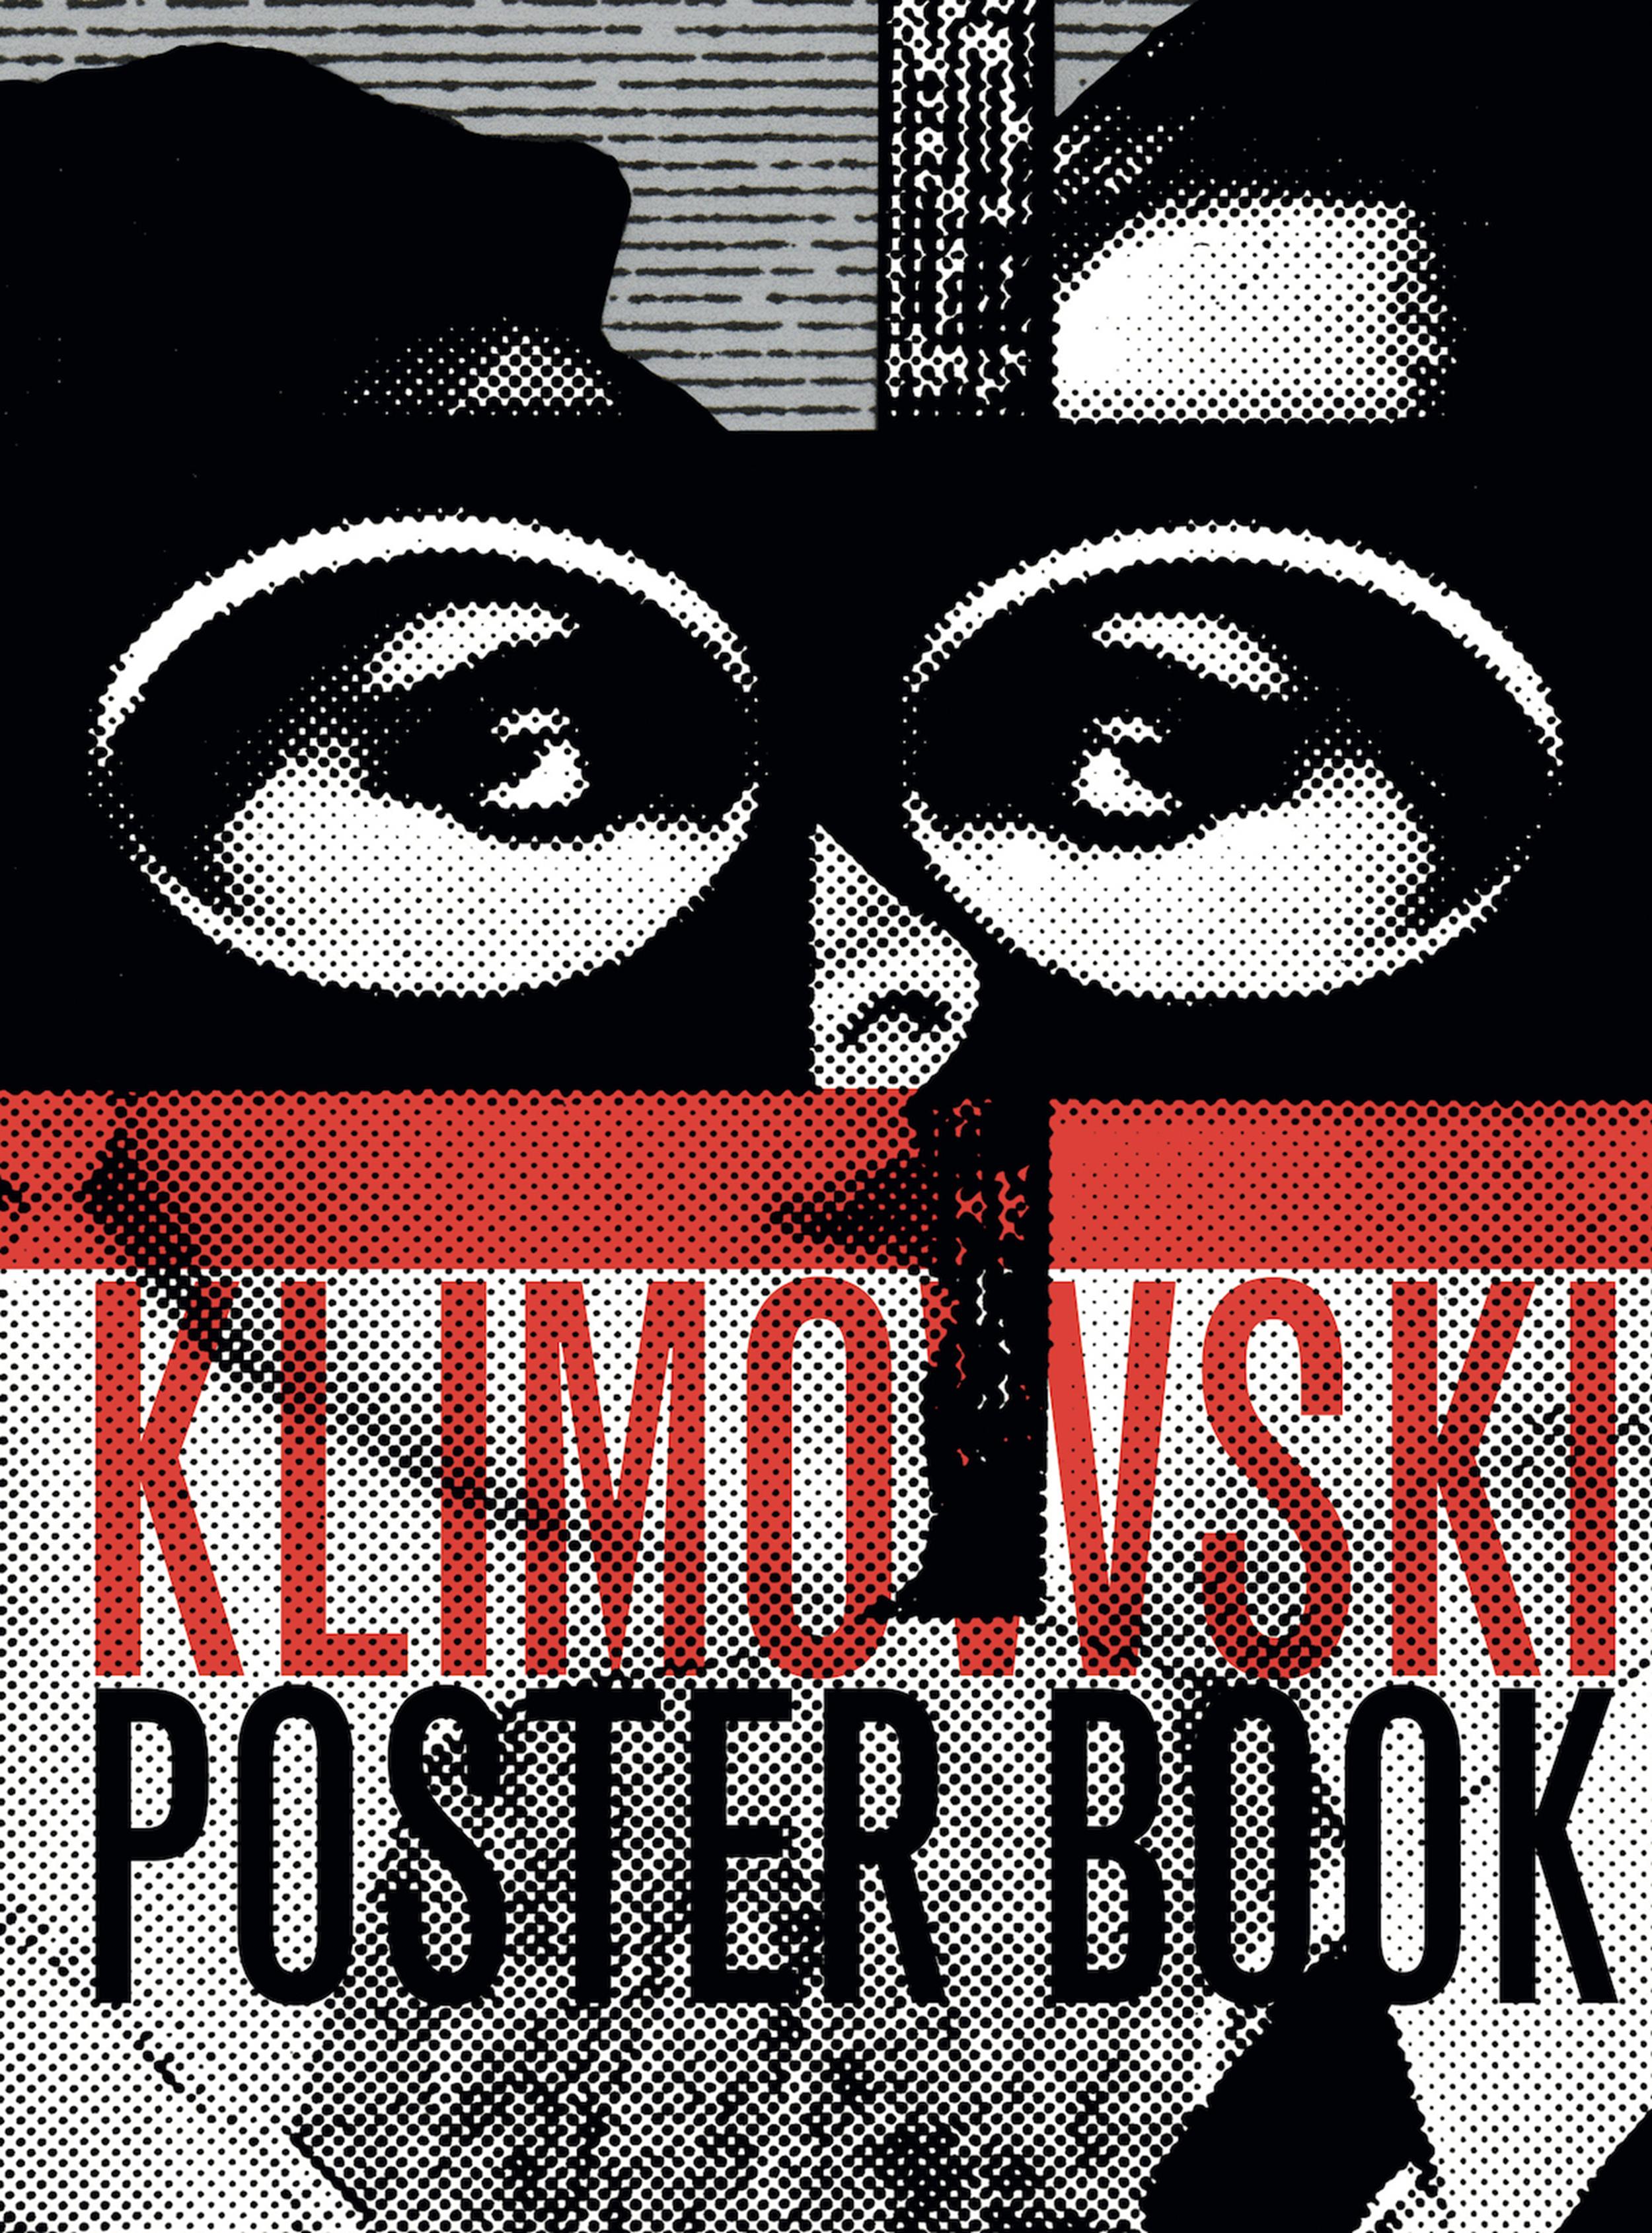 Andrzej Klimowski, Poster Book, 2018, okładka książki wydanej przez SelfMadeHero 